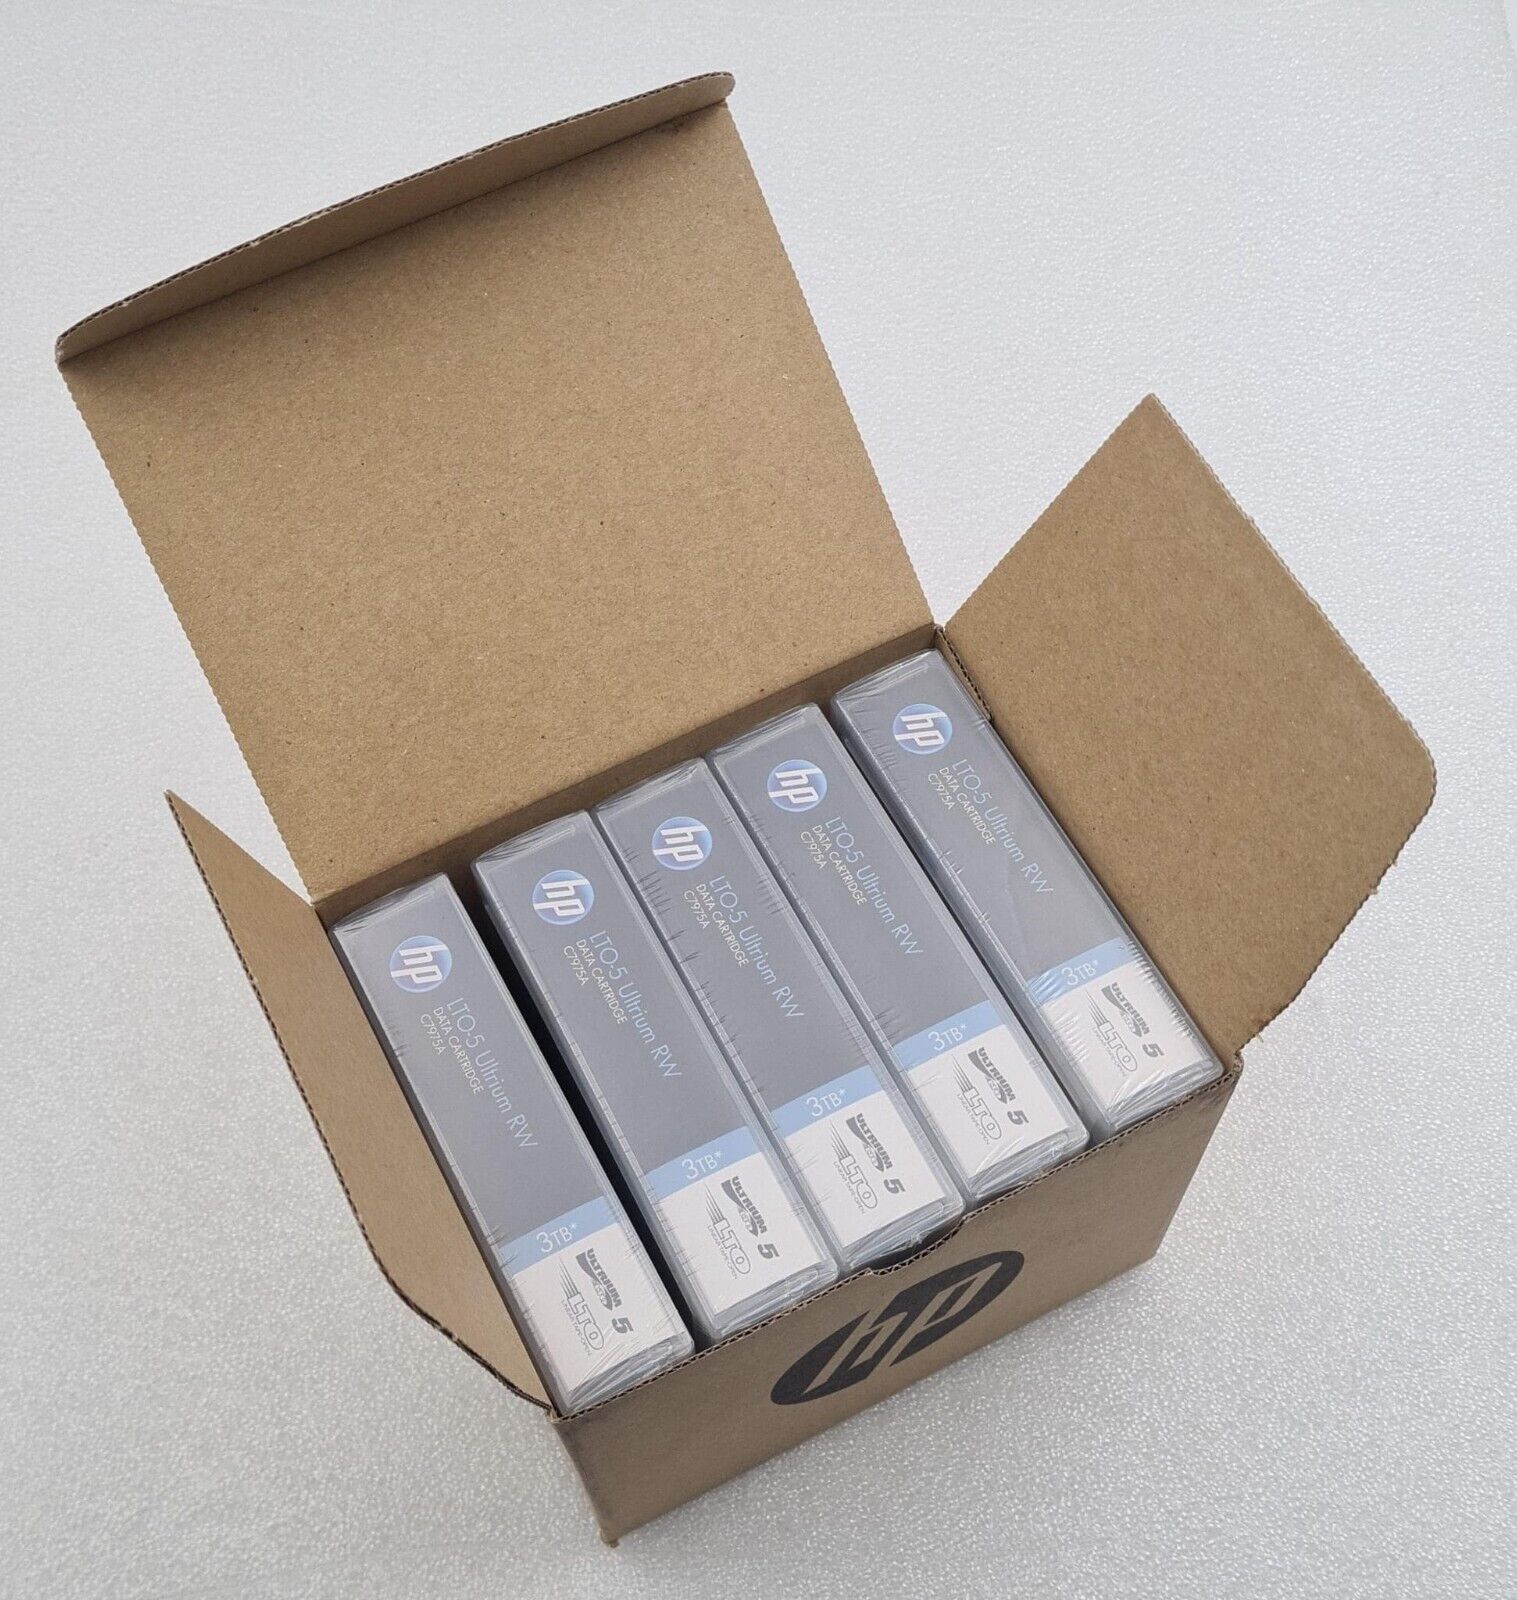 [5-Pack] NEW - HP C7975A 3TB RW Data Tape Cartridge Ultrium LTO5 LTO 5